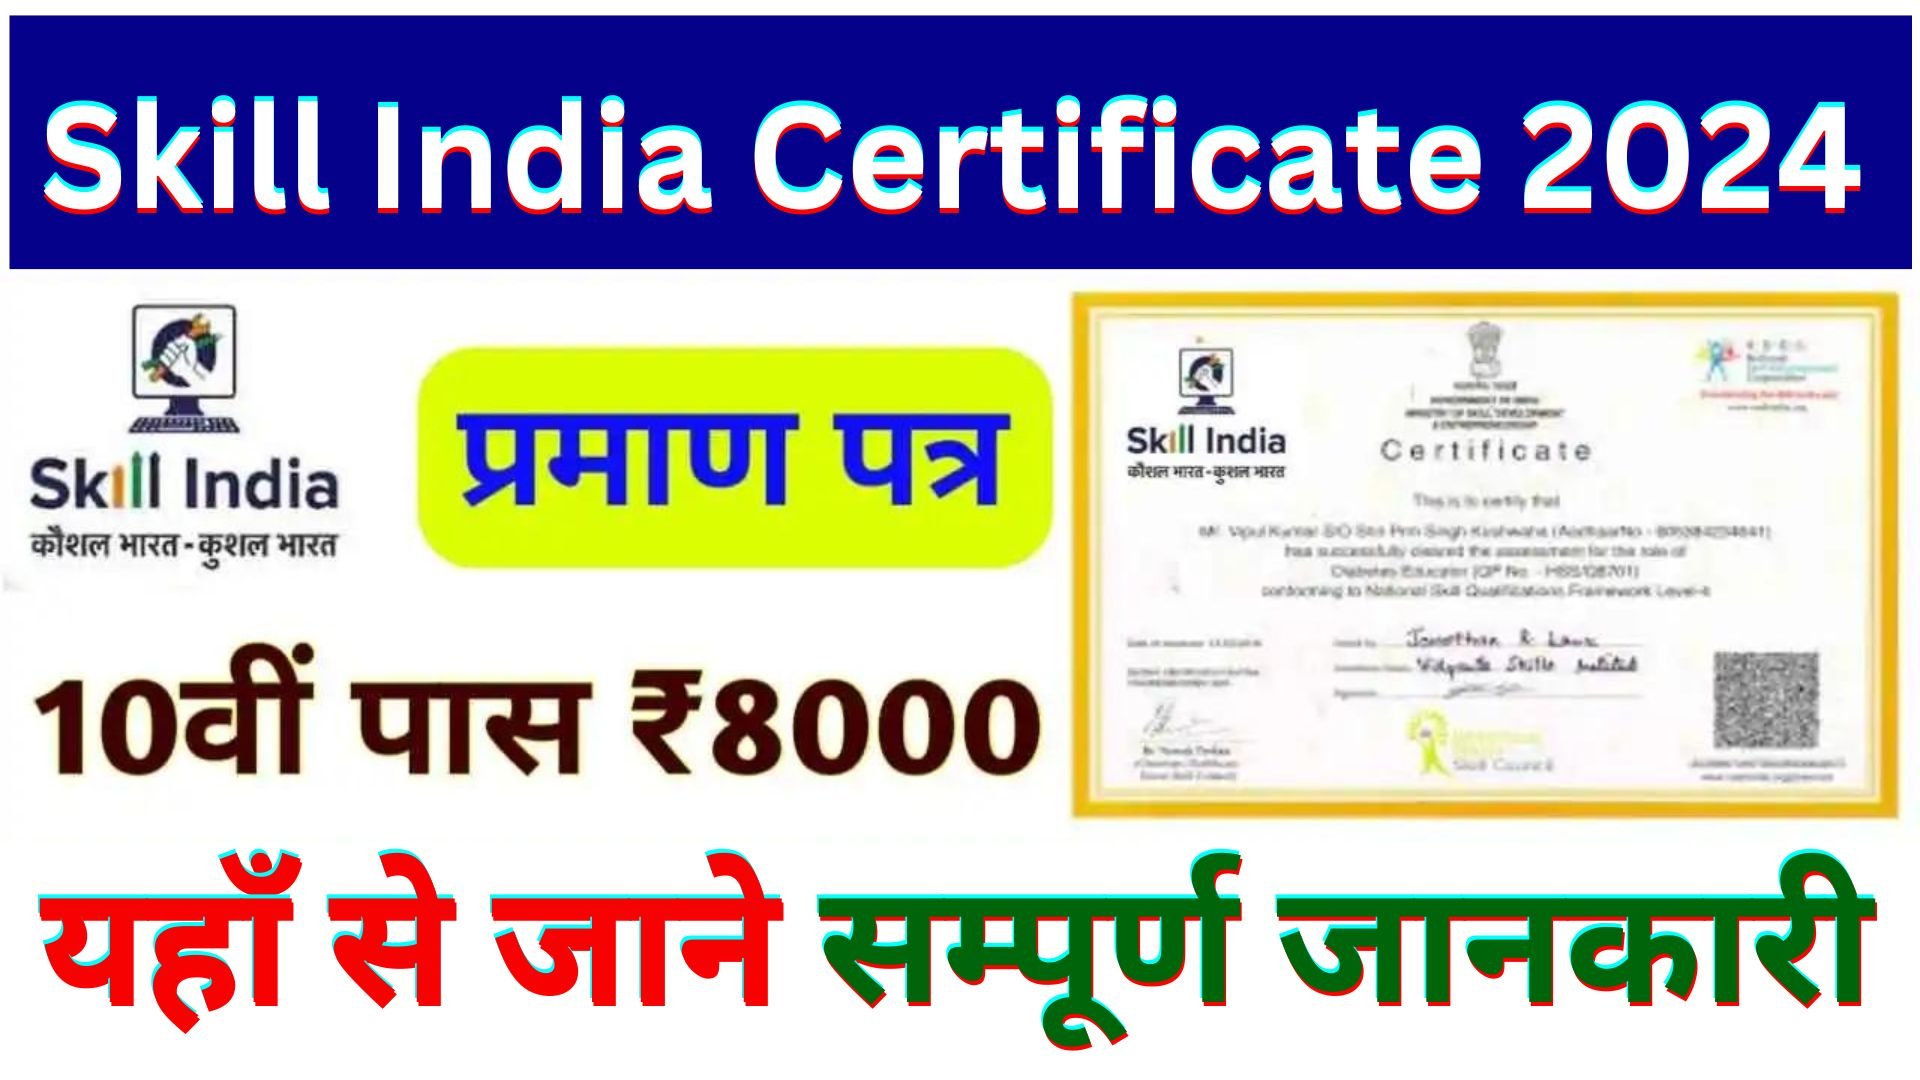 Skill India Digital Certificate 2024 Registration : फ्री सर्टिफिकेट के साथ पाए रोजगार यहाँ से करे आवेदन